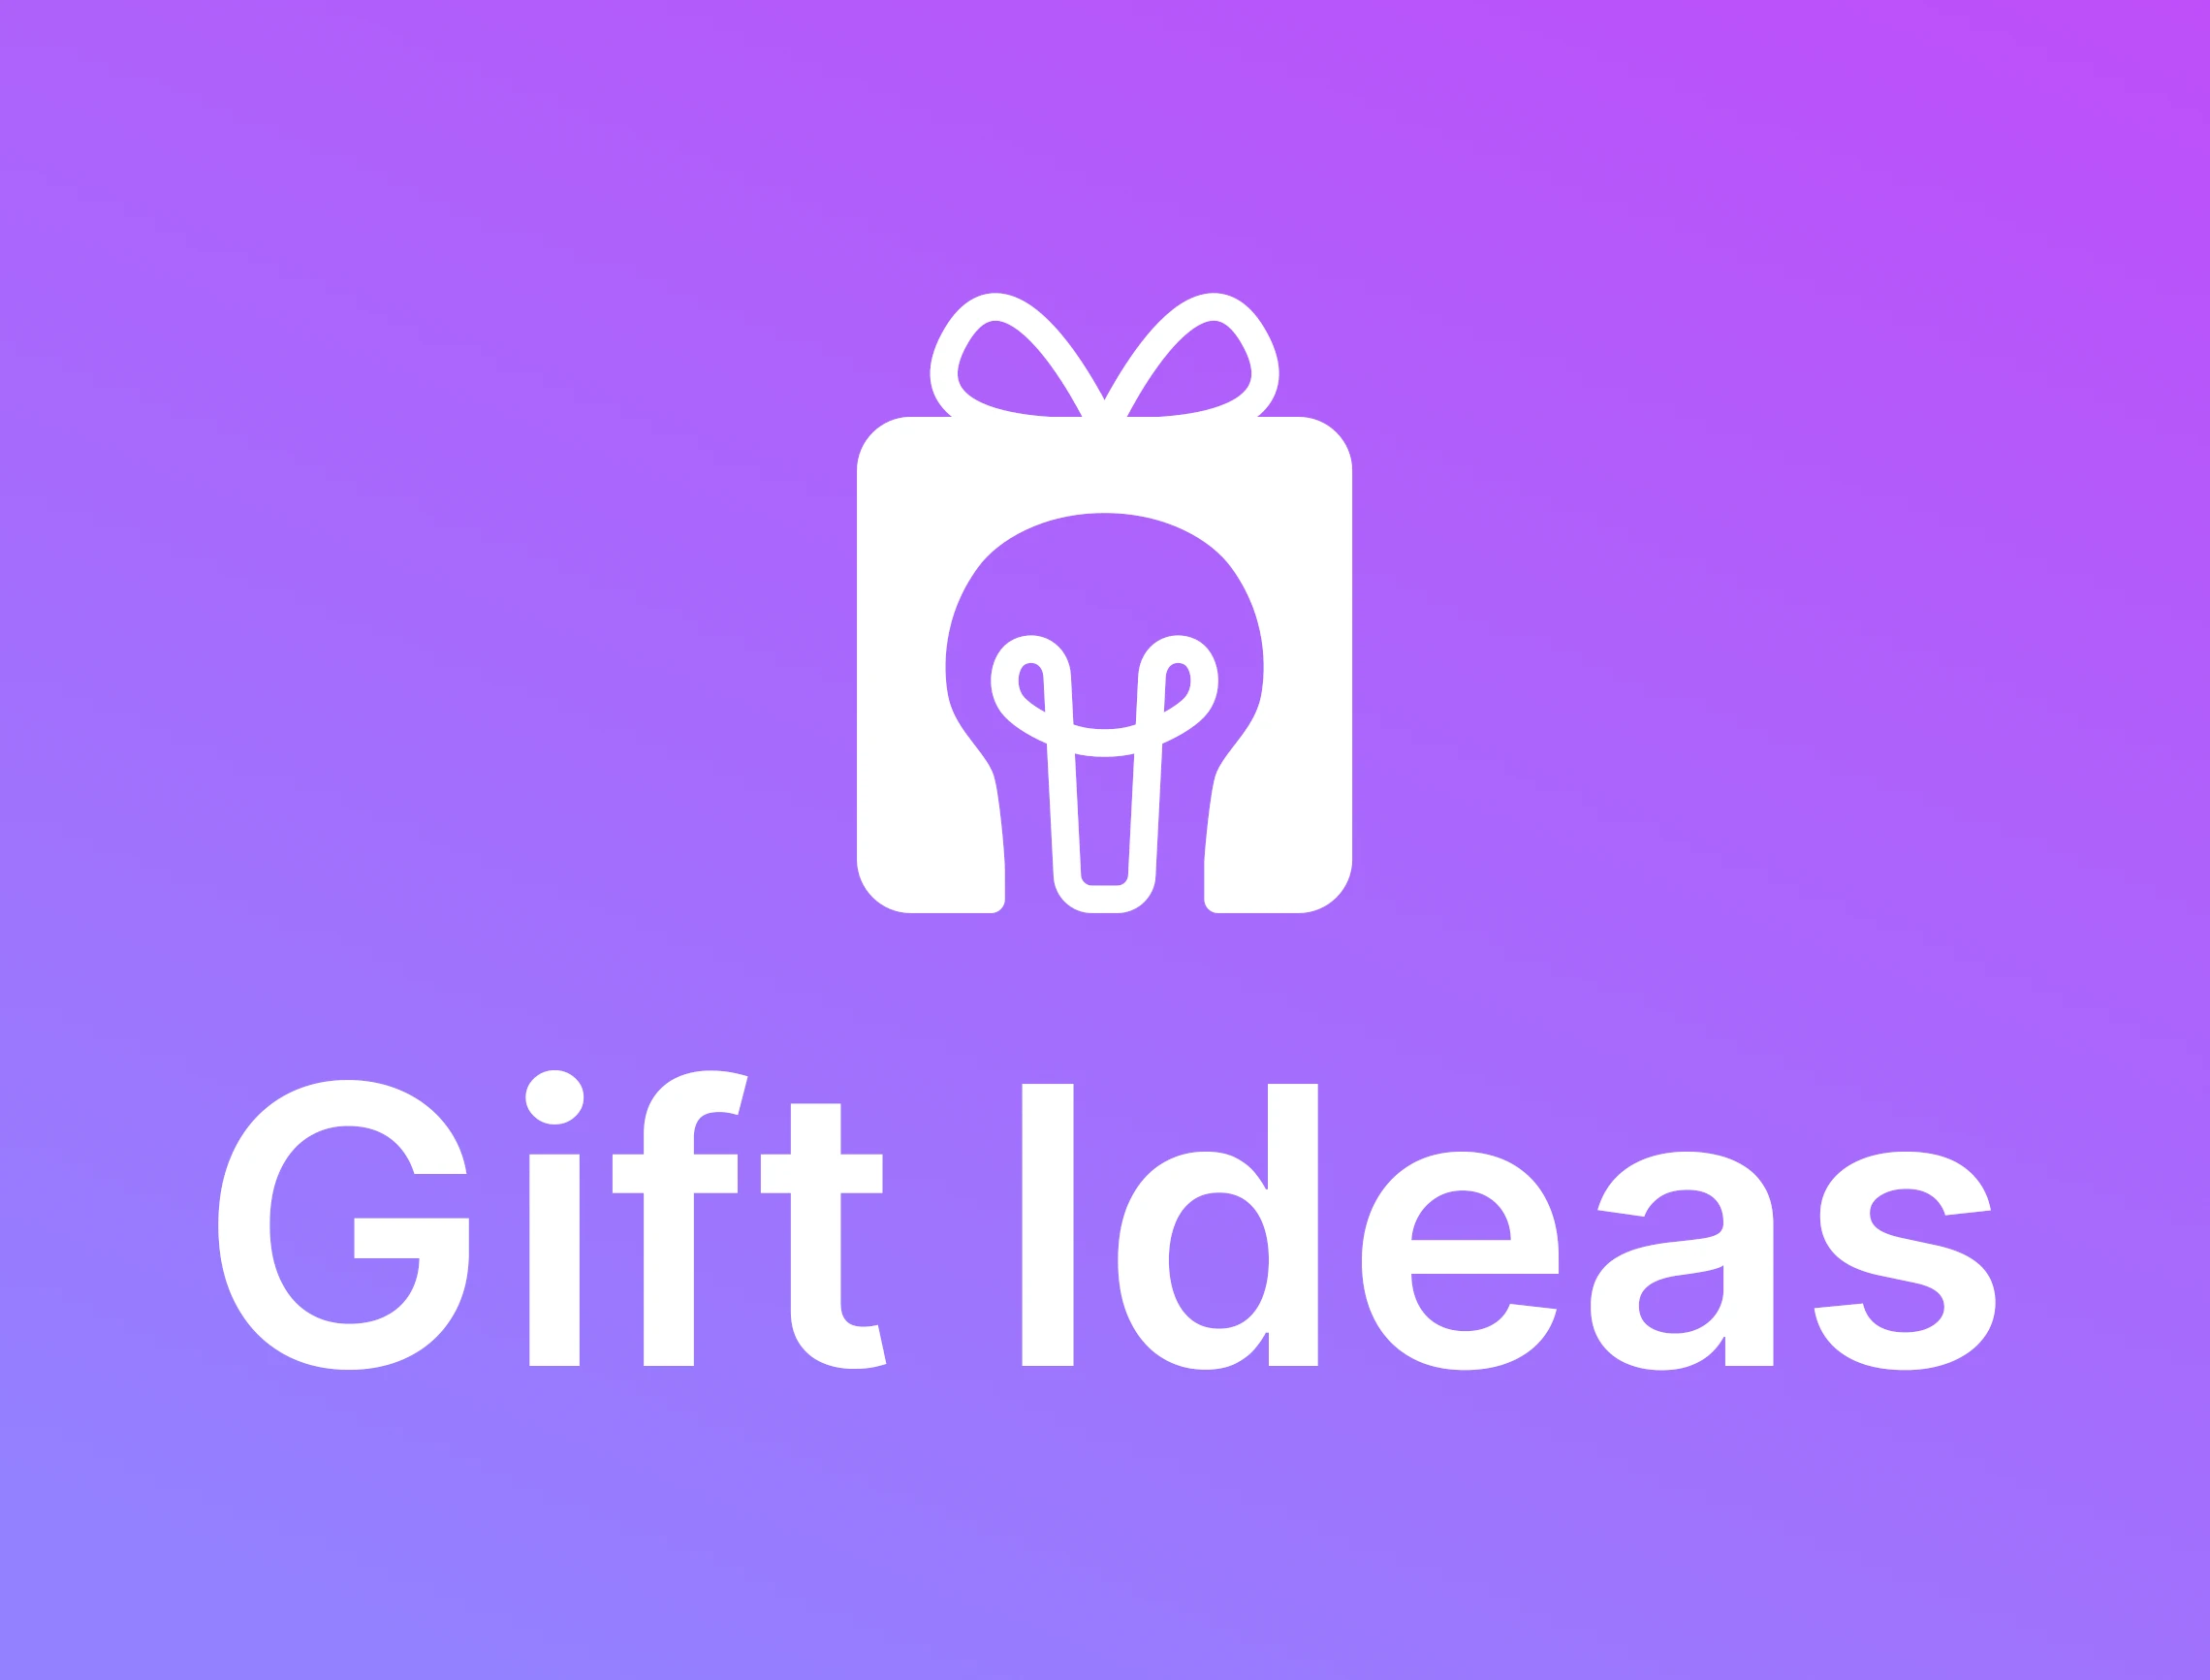 gift ideas logo image